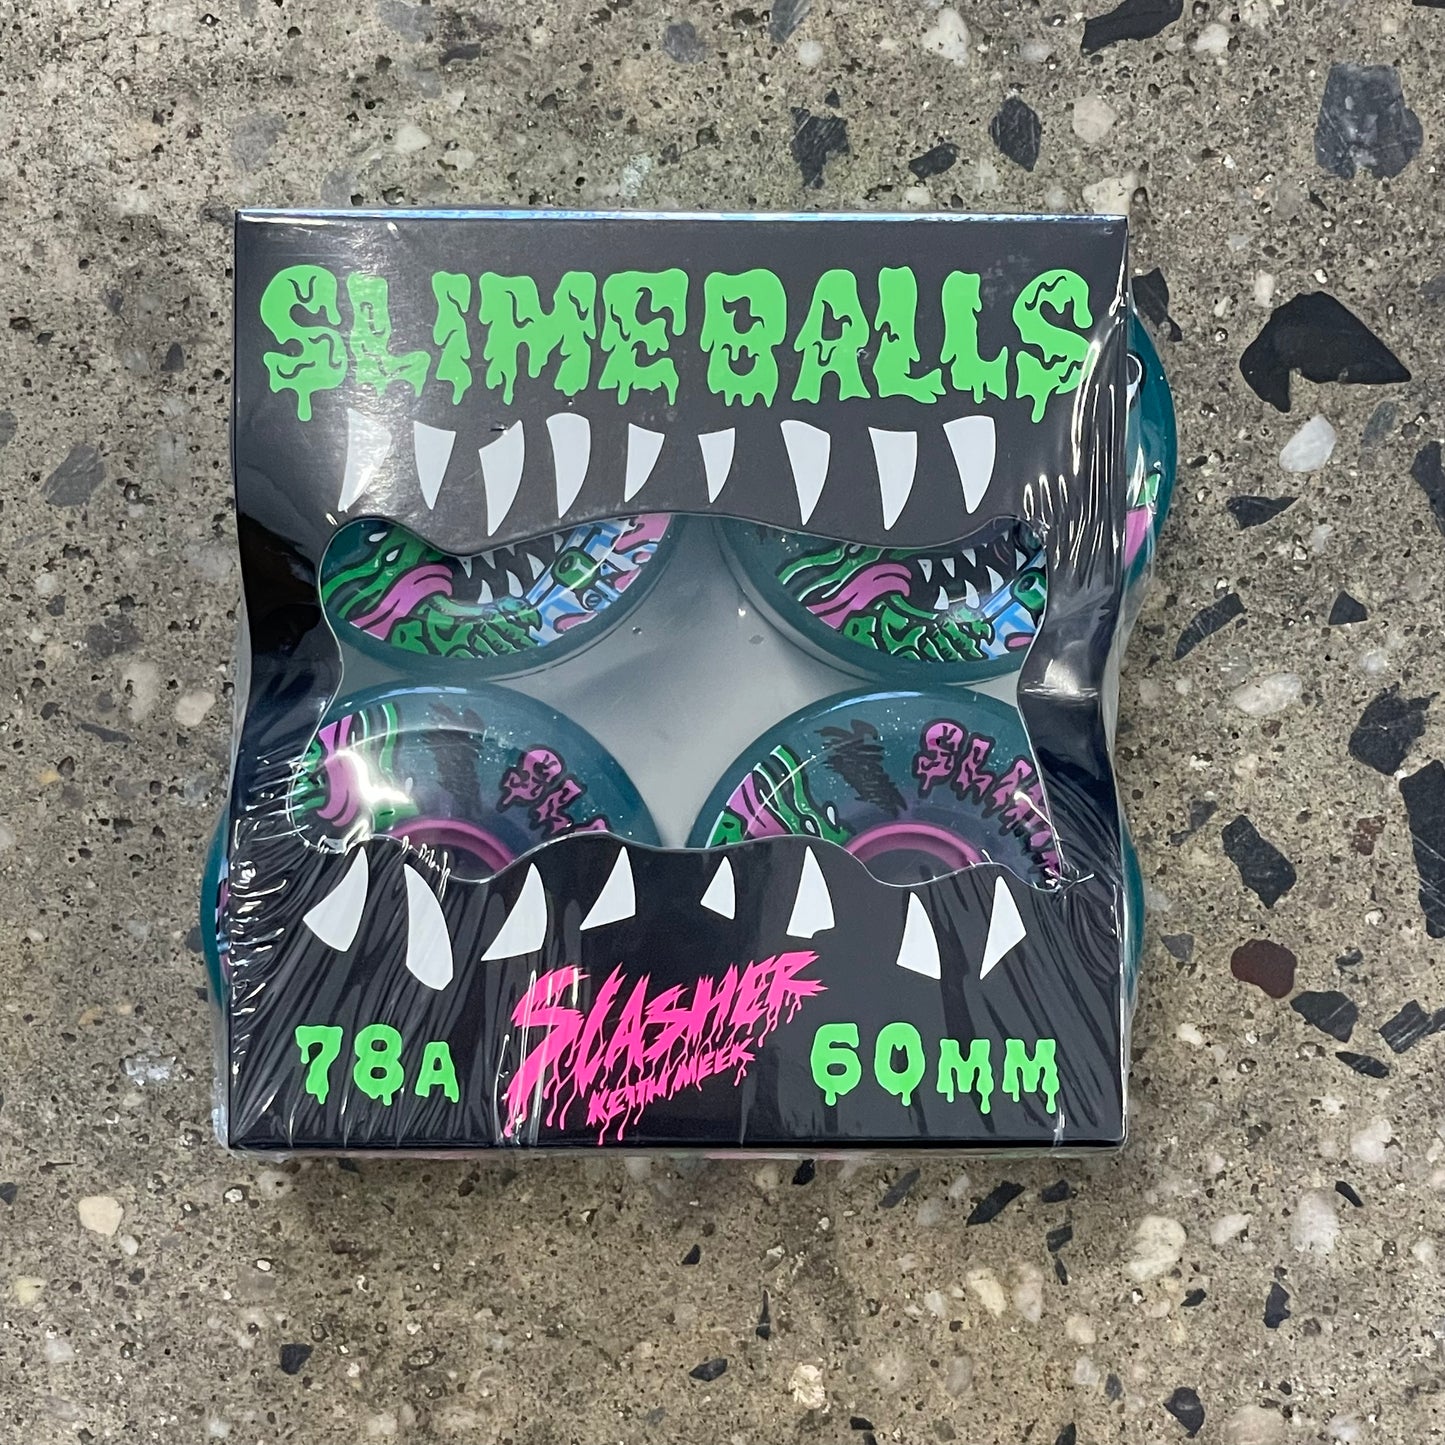 Slime Balls Meek Slasher OG Slime Wheels 78a - Green Glitter